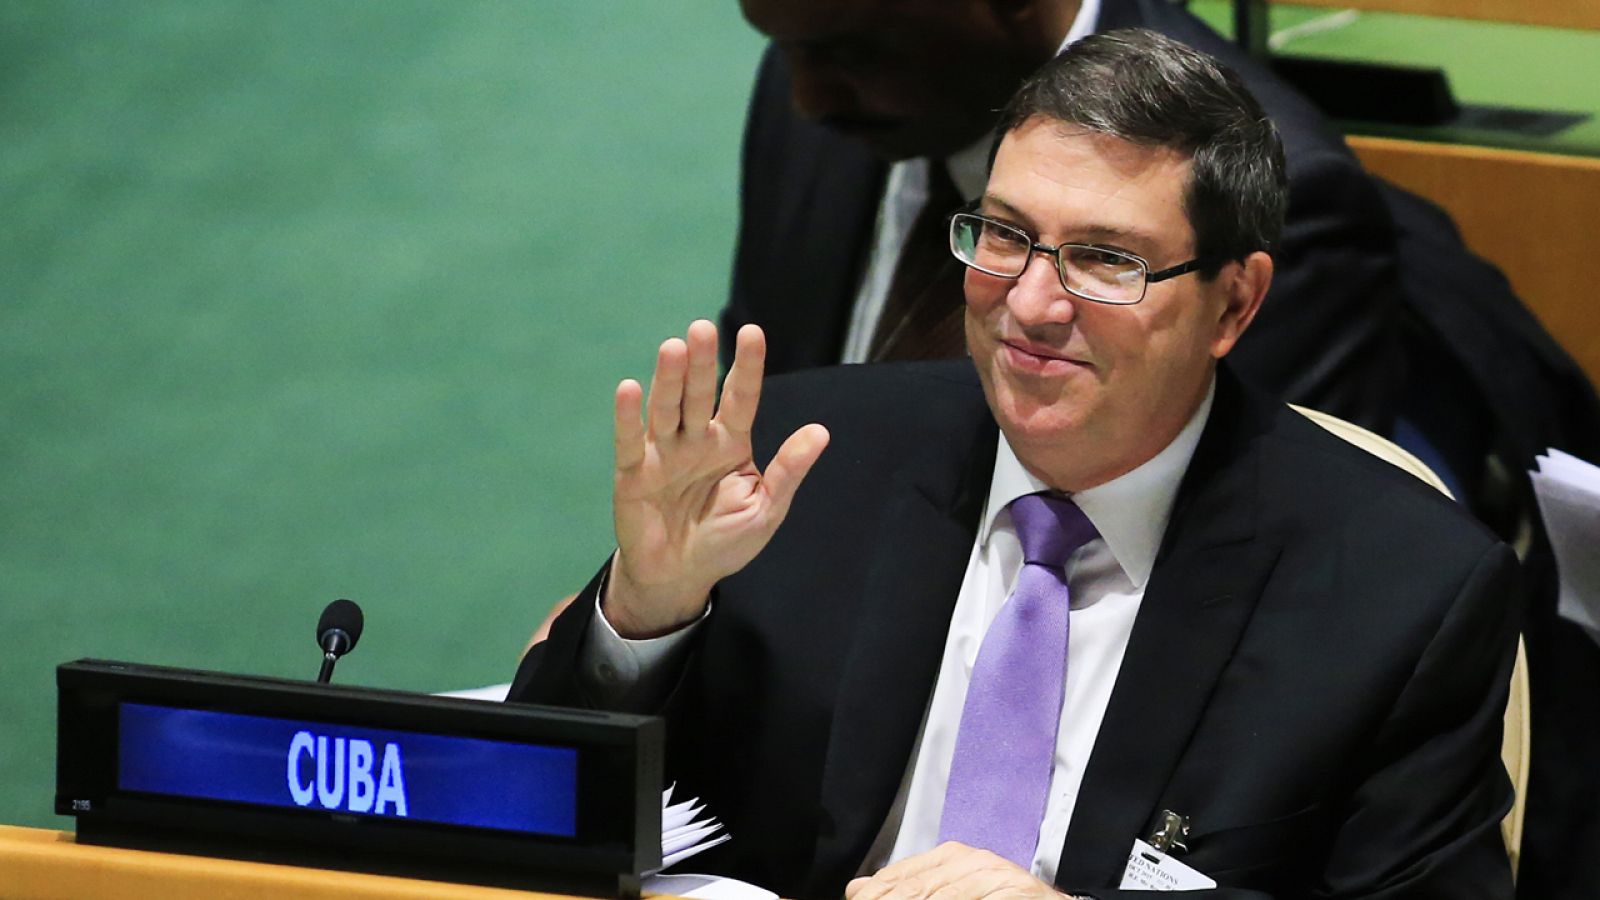 El secretario de Relaciones Exteriores de Cuba, Bruno Rodríguez, antes de la sesión de la Asamblea General de la ONU